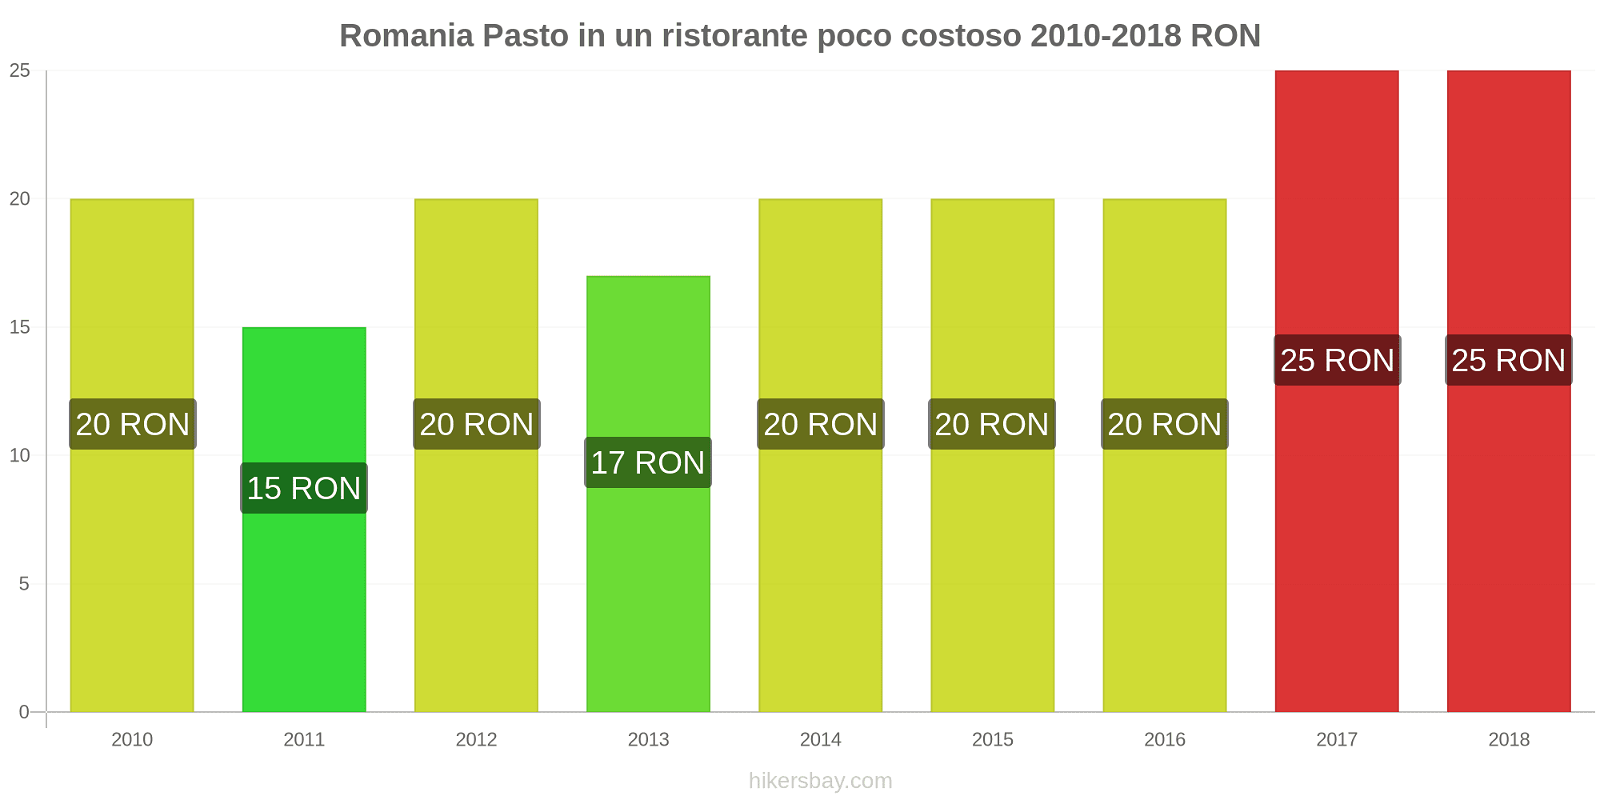 Romania cambi di prezzo Pasto in un ristorante economico hikersbay.com